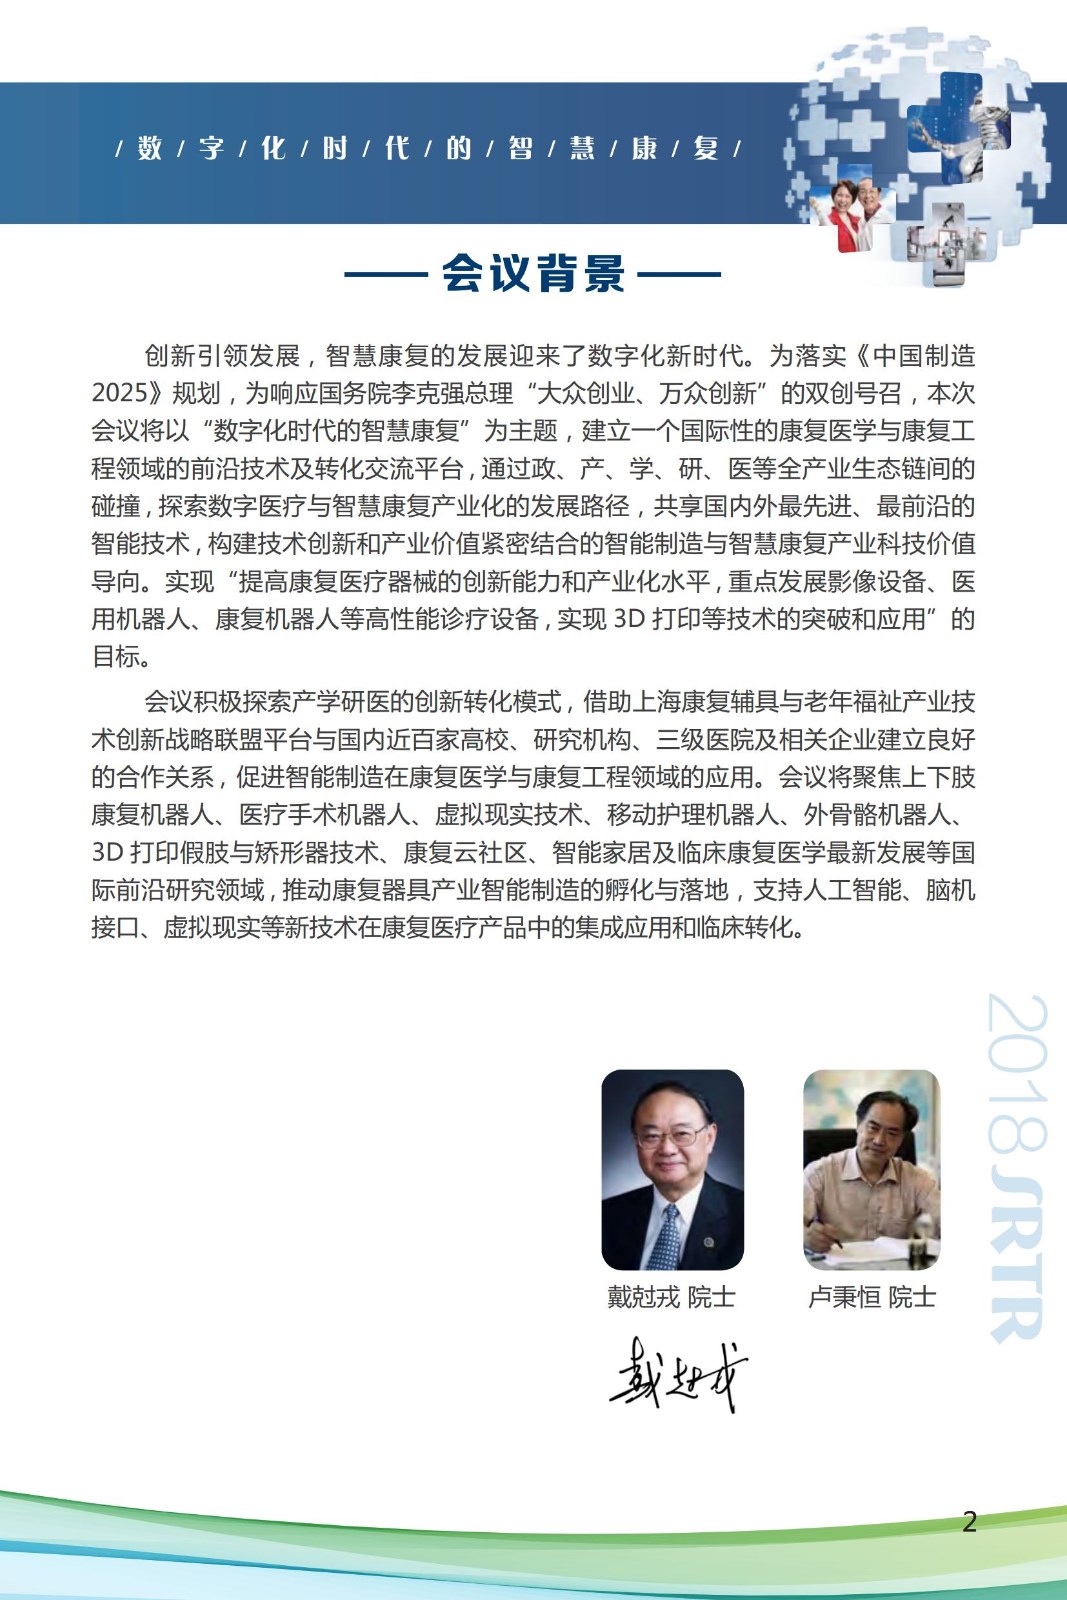 2018srtr-深圳国际康复医学与工程转化会议第一轮通知jpg_Page3.jpg